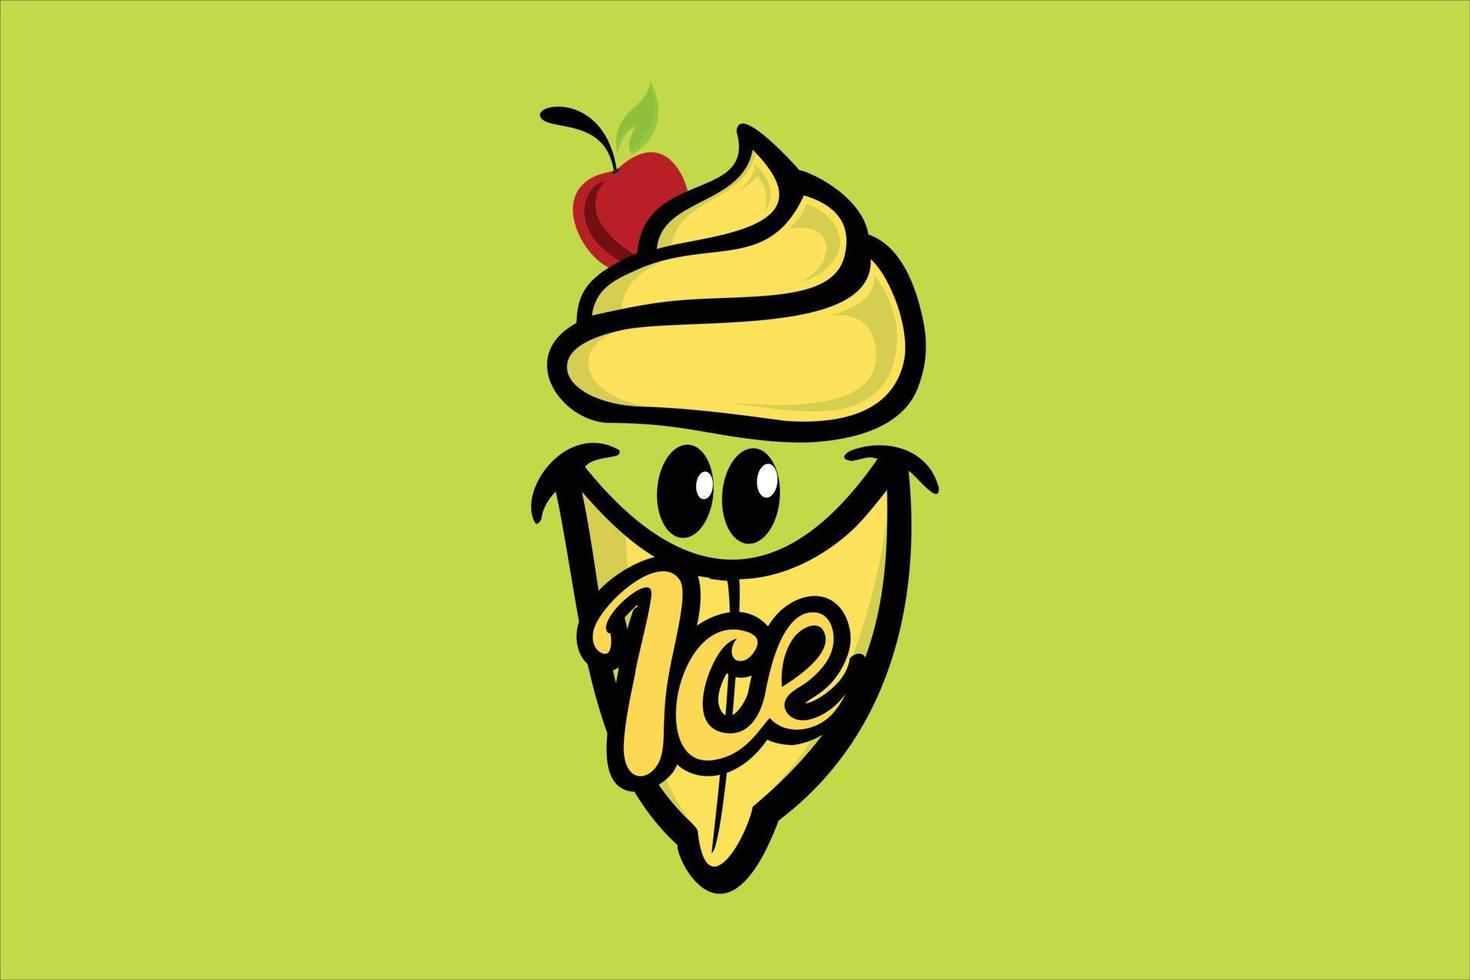 Il logo della crema al gusto di banana sembra delizioso vettore